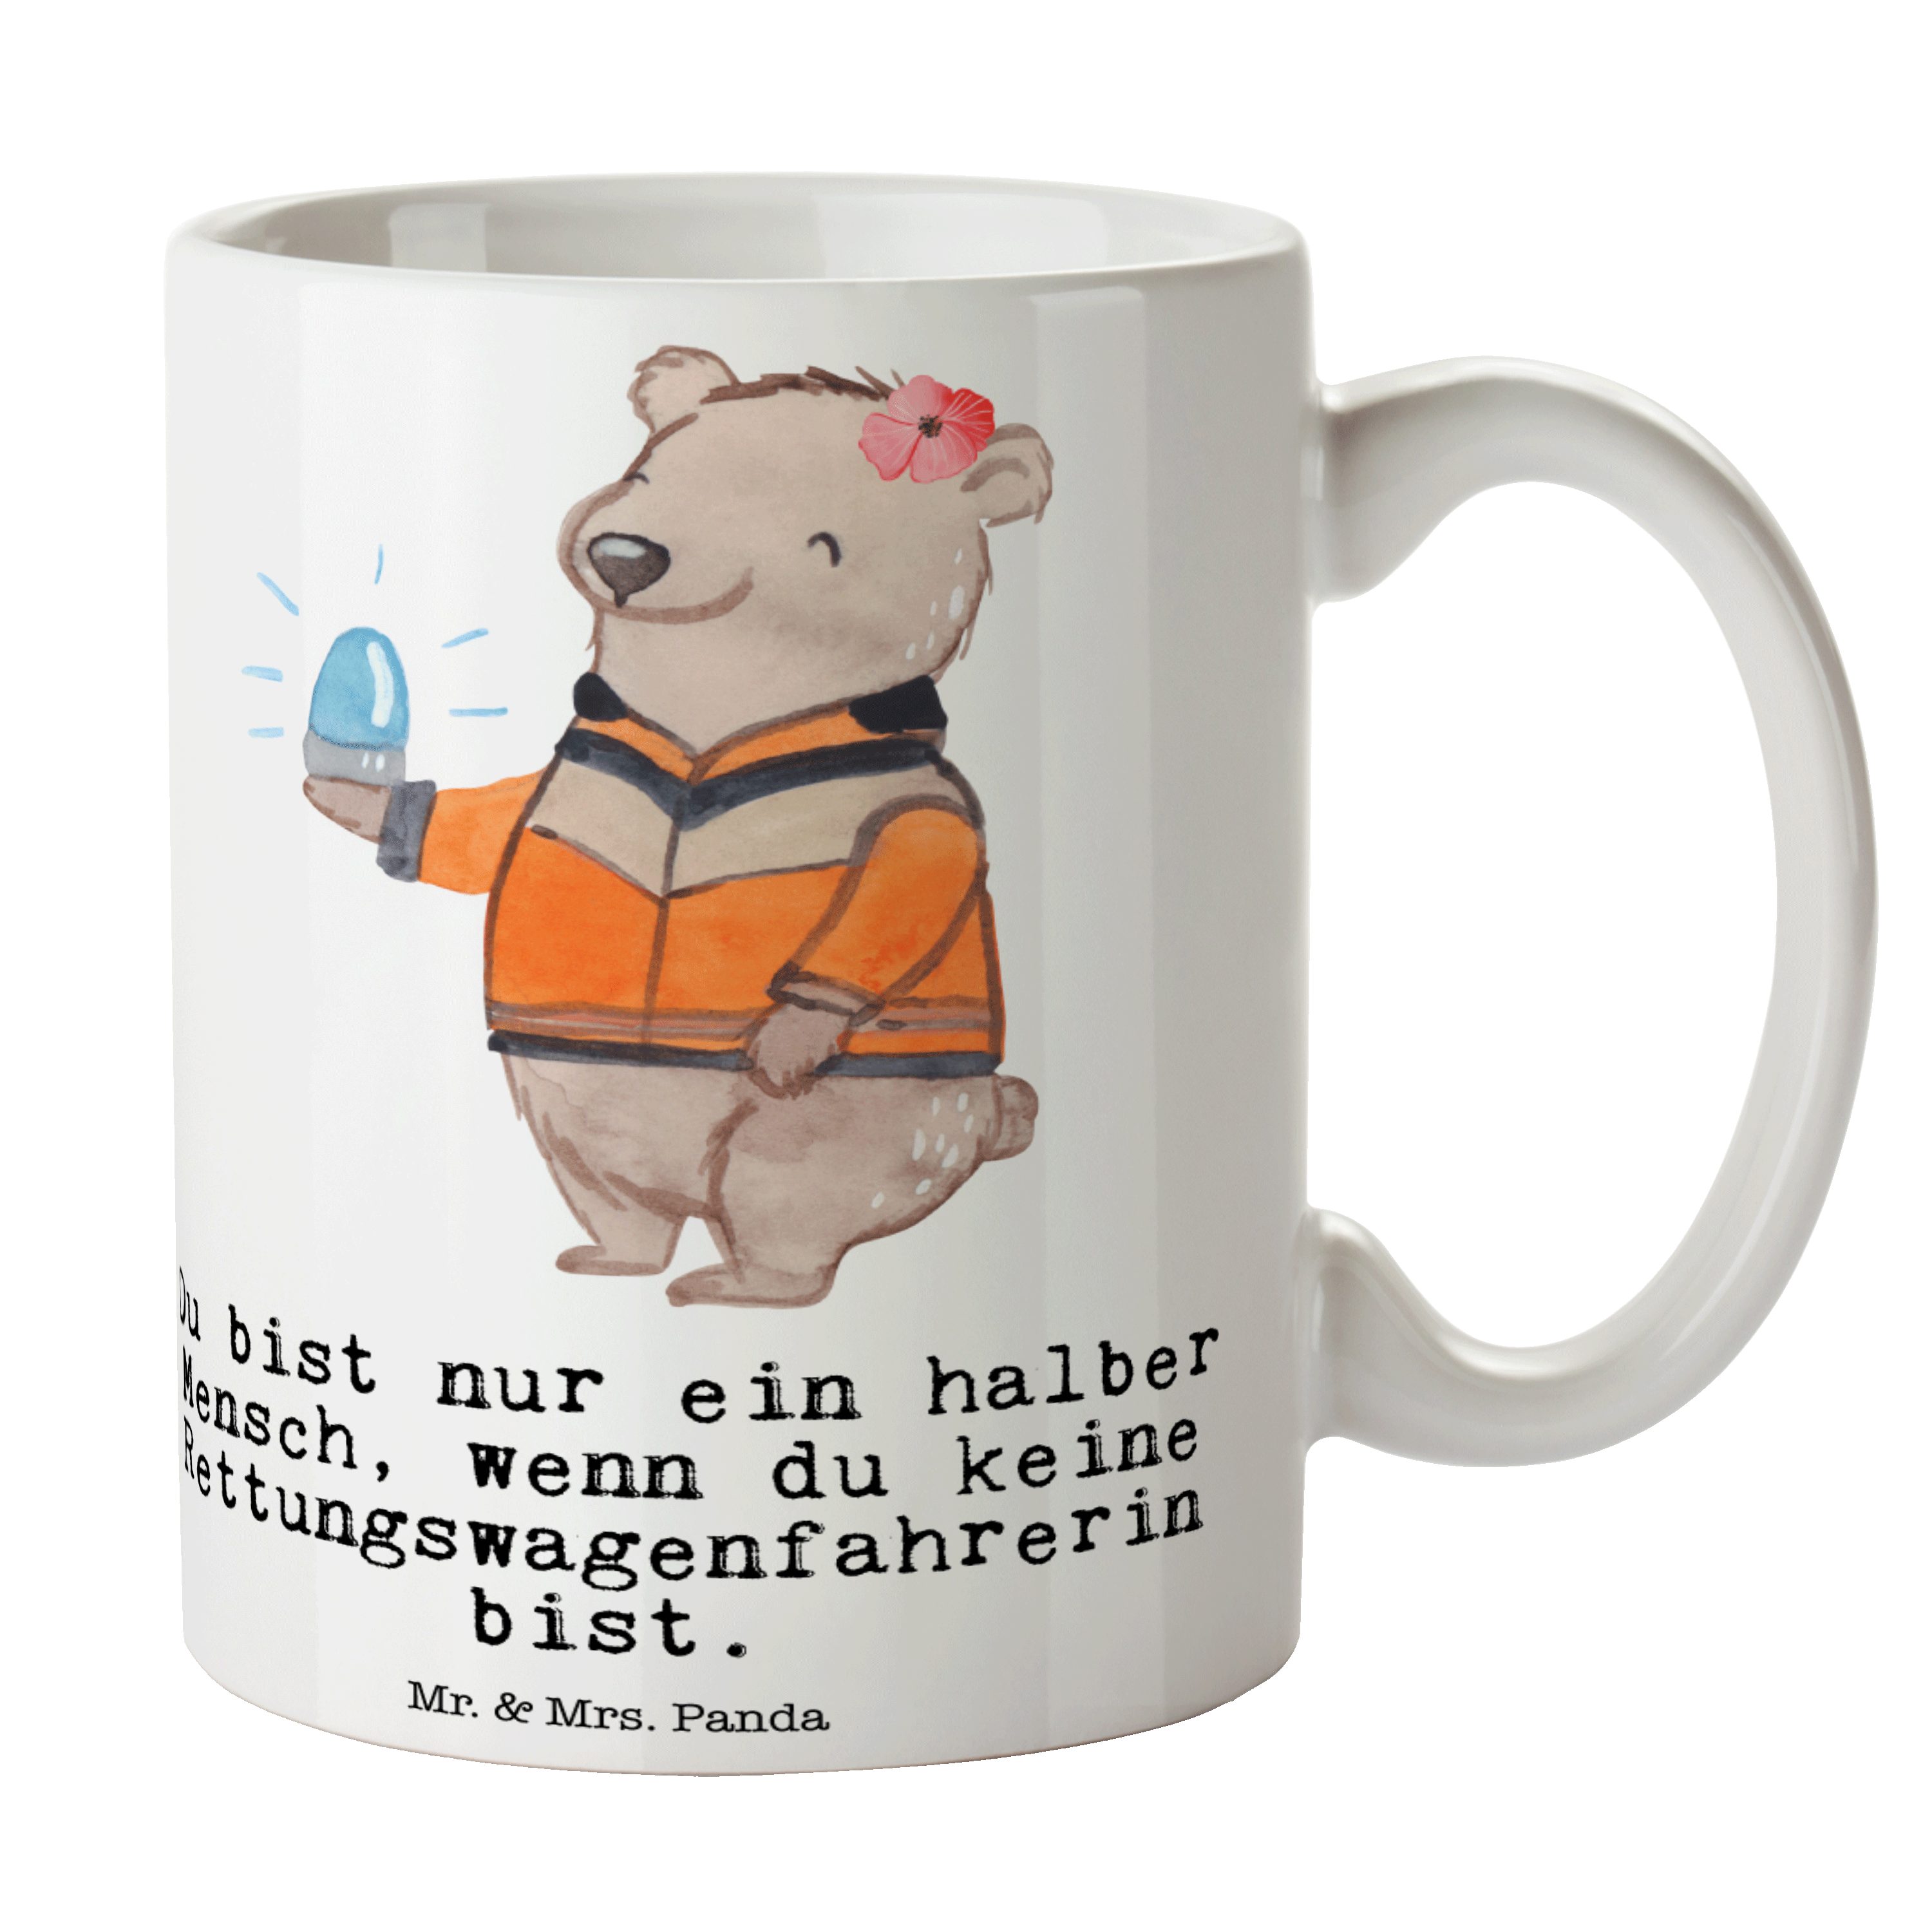 Mr. & Mrs. Panda Tasse Rettungswagenfahrerin mit Herz - Weiß - Geschenk, Kaffeetasse, Büro T, Keramik